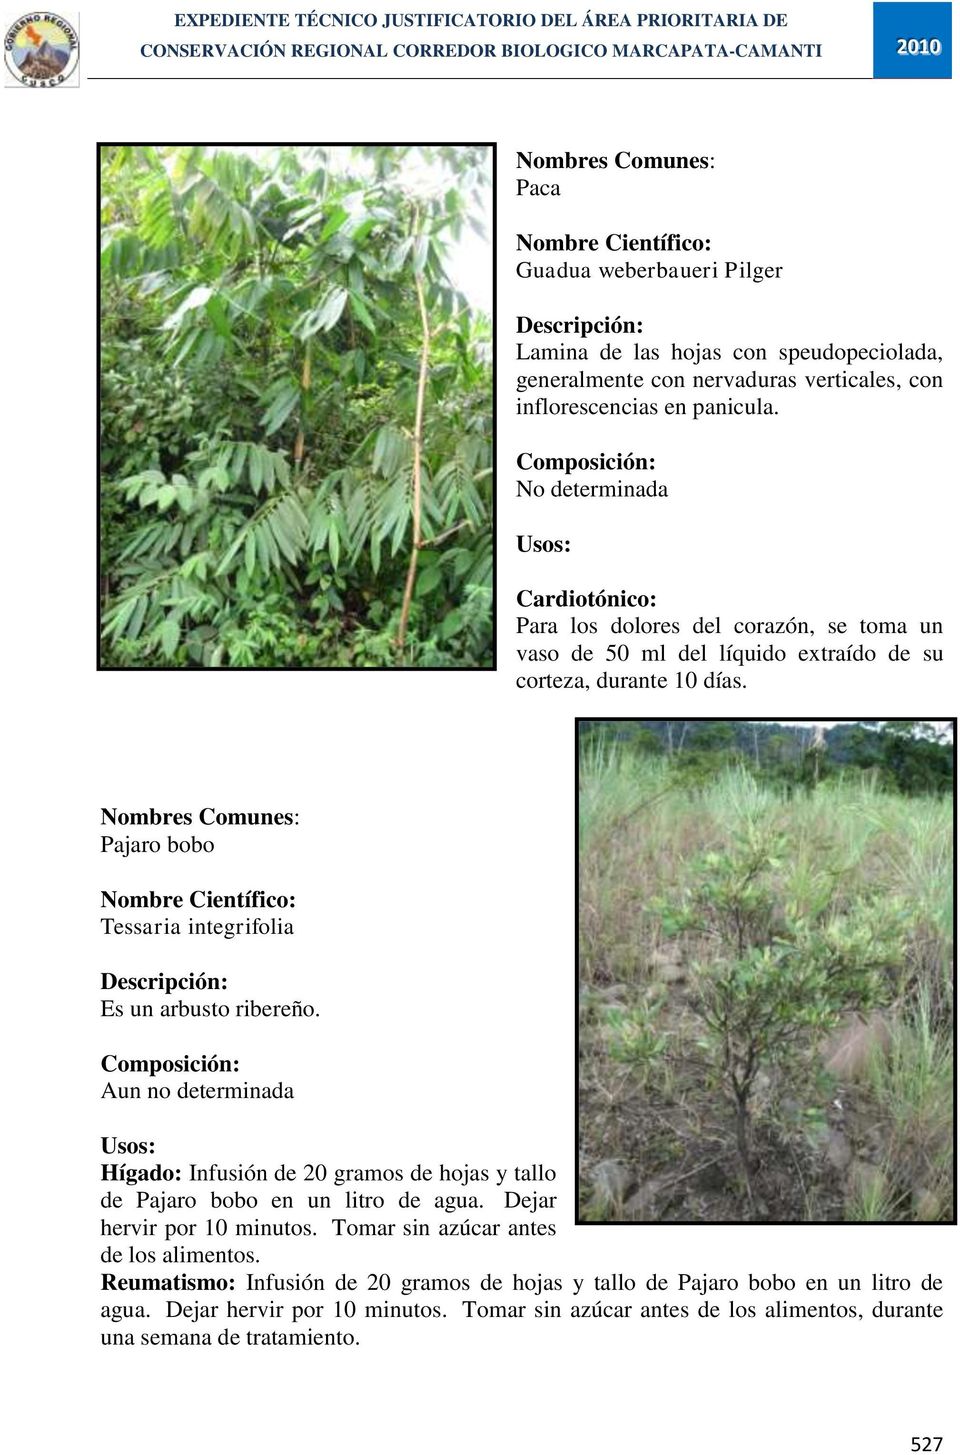 Pajaro bobo Tessaria integrifolia Es un arbusto ribereño. Aun no determinada Hígado: Infusión de 20 gramos de hojas y tallo de Pajaro bobo en un litro de agua.